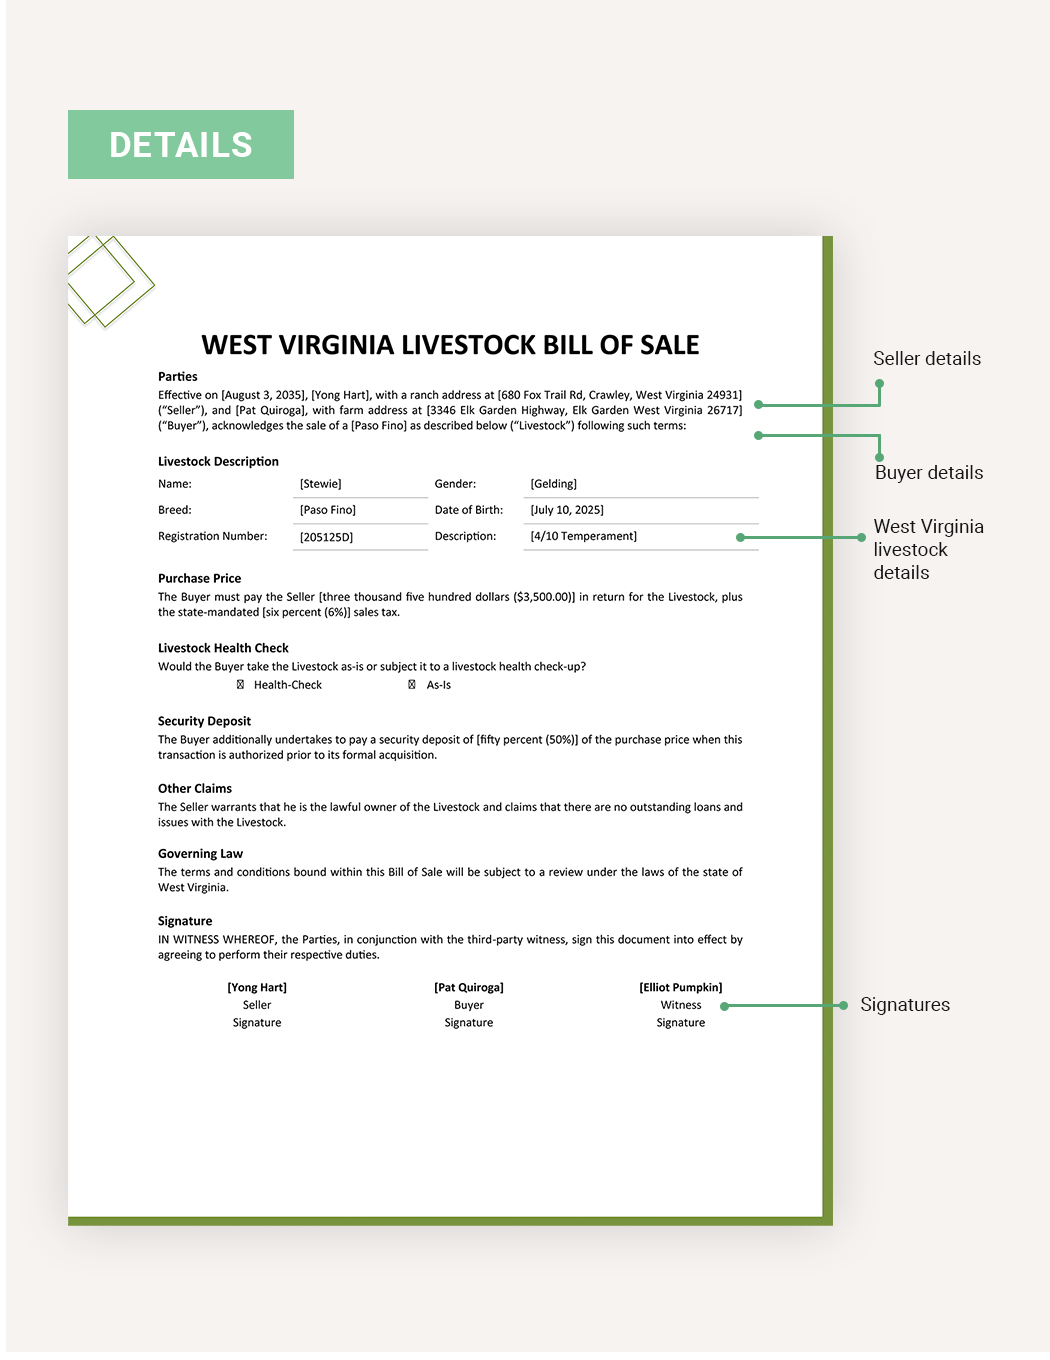 West Virginia Livestock Bill of Sale Template